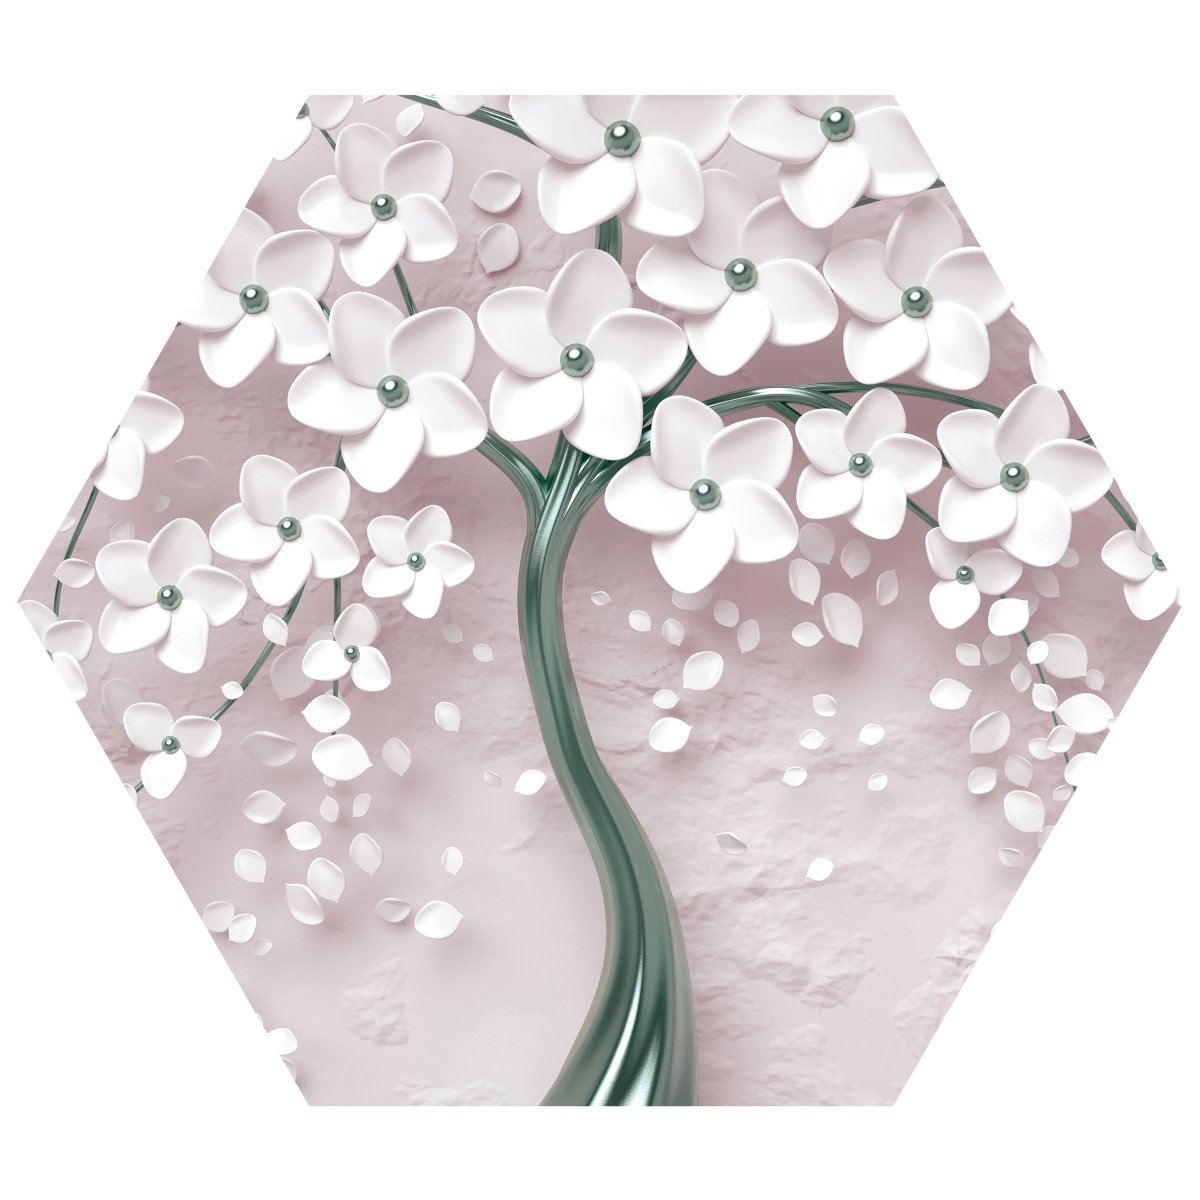 Hexagon-Fototapete Baum mit Blüten M0018 - Bild 11